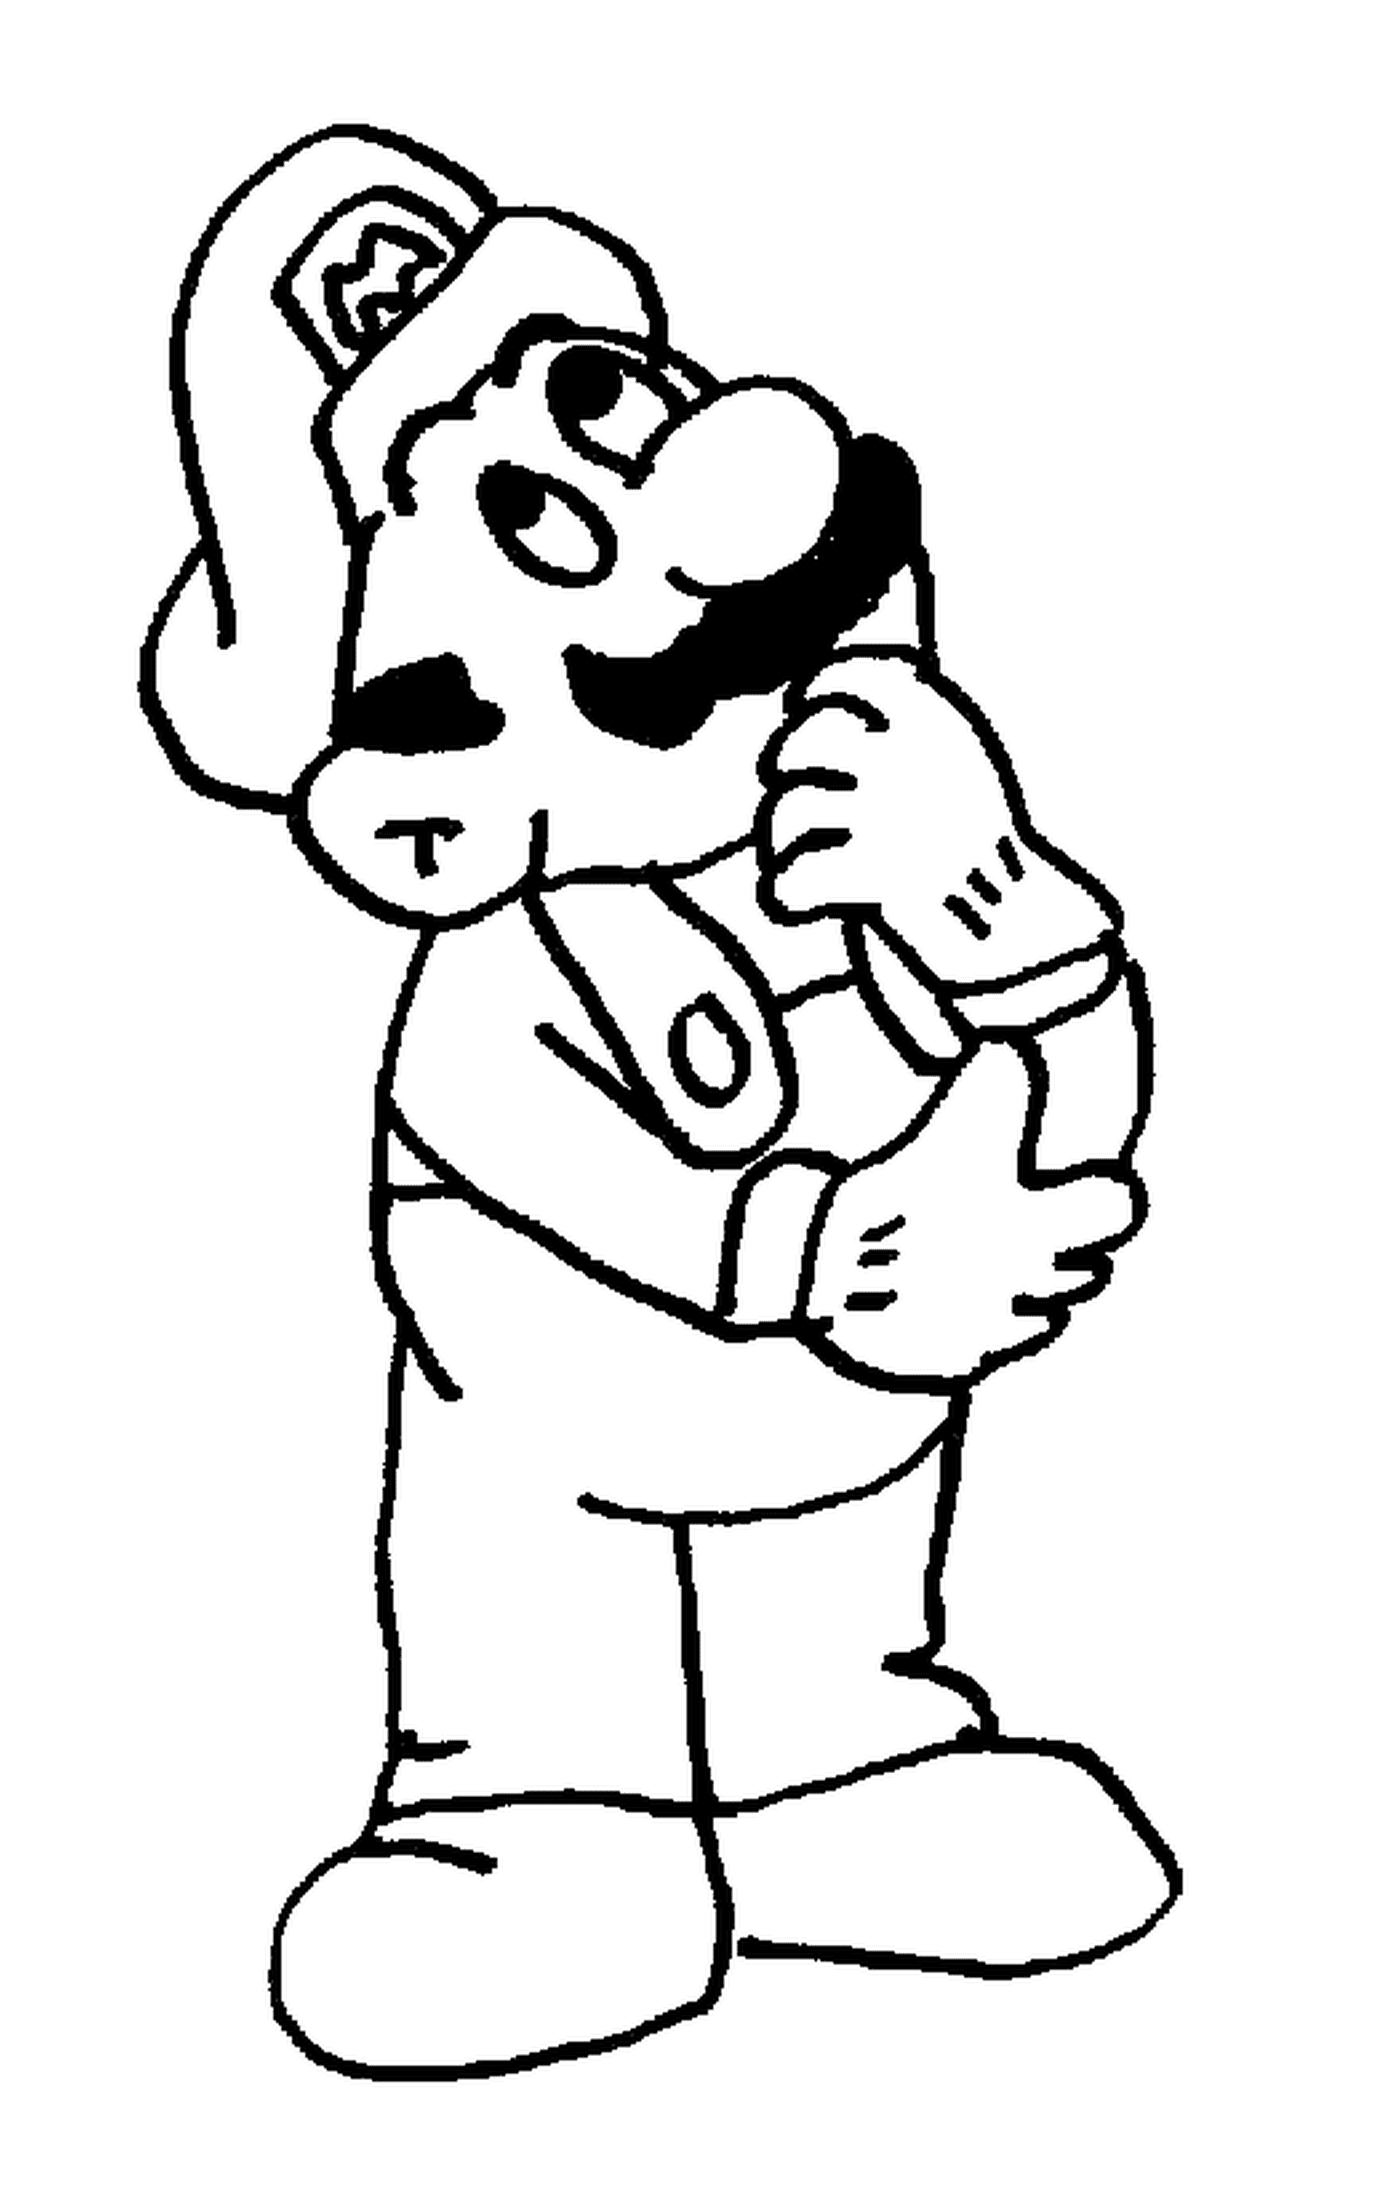  Mario, un uomo pensieroso con i baffi 